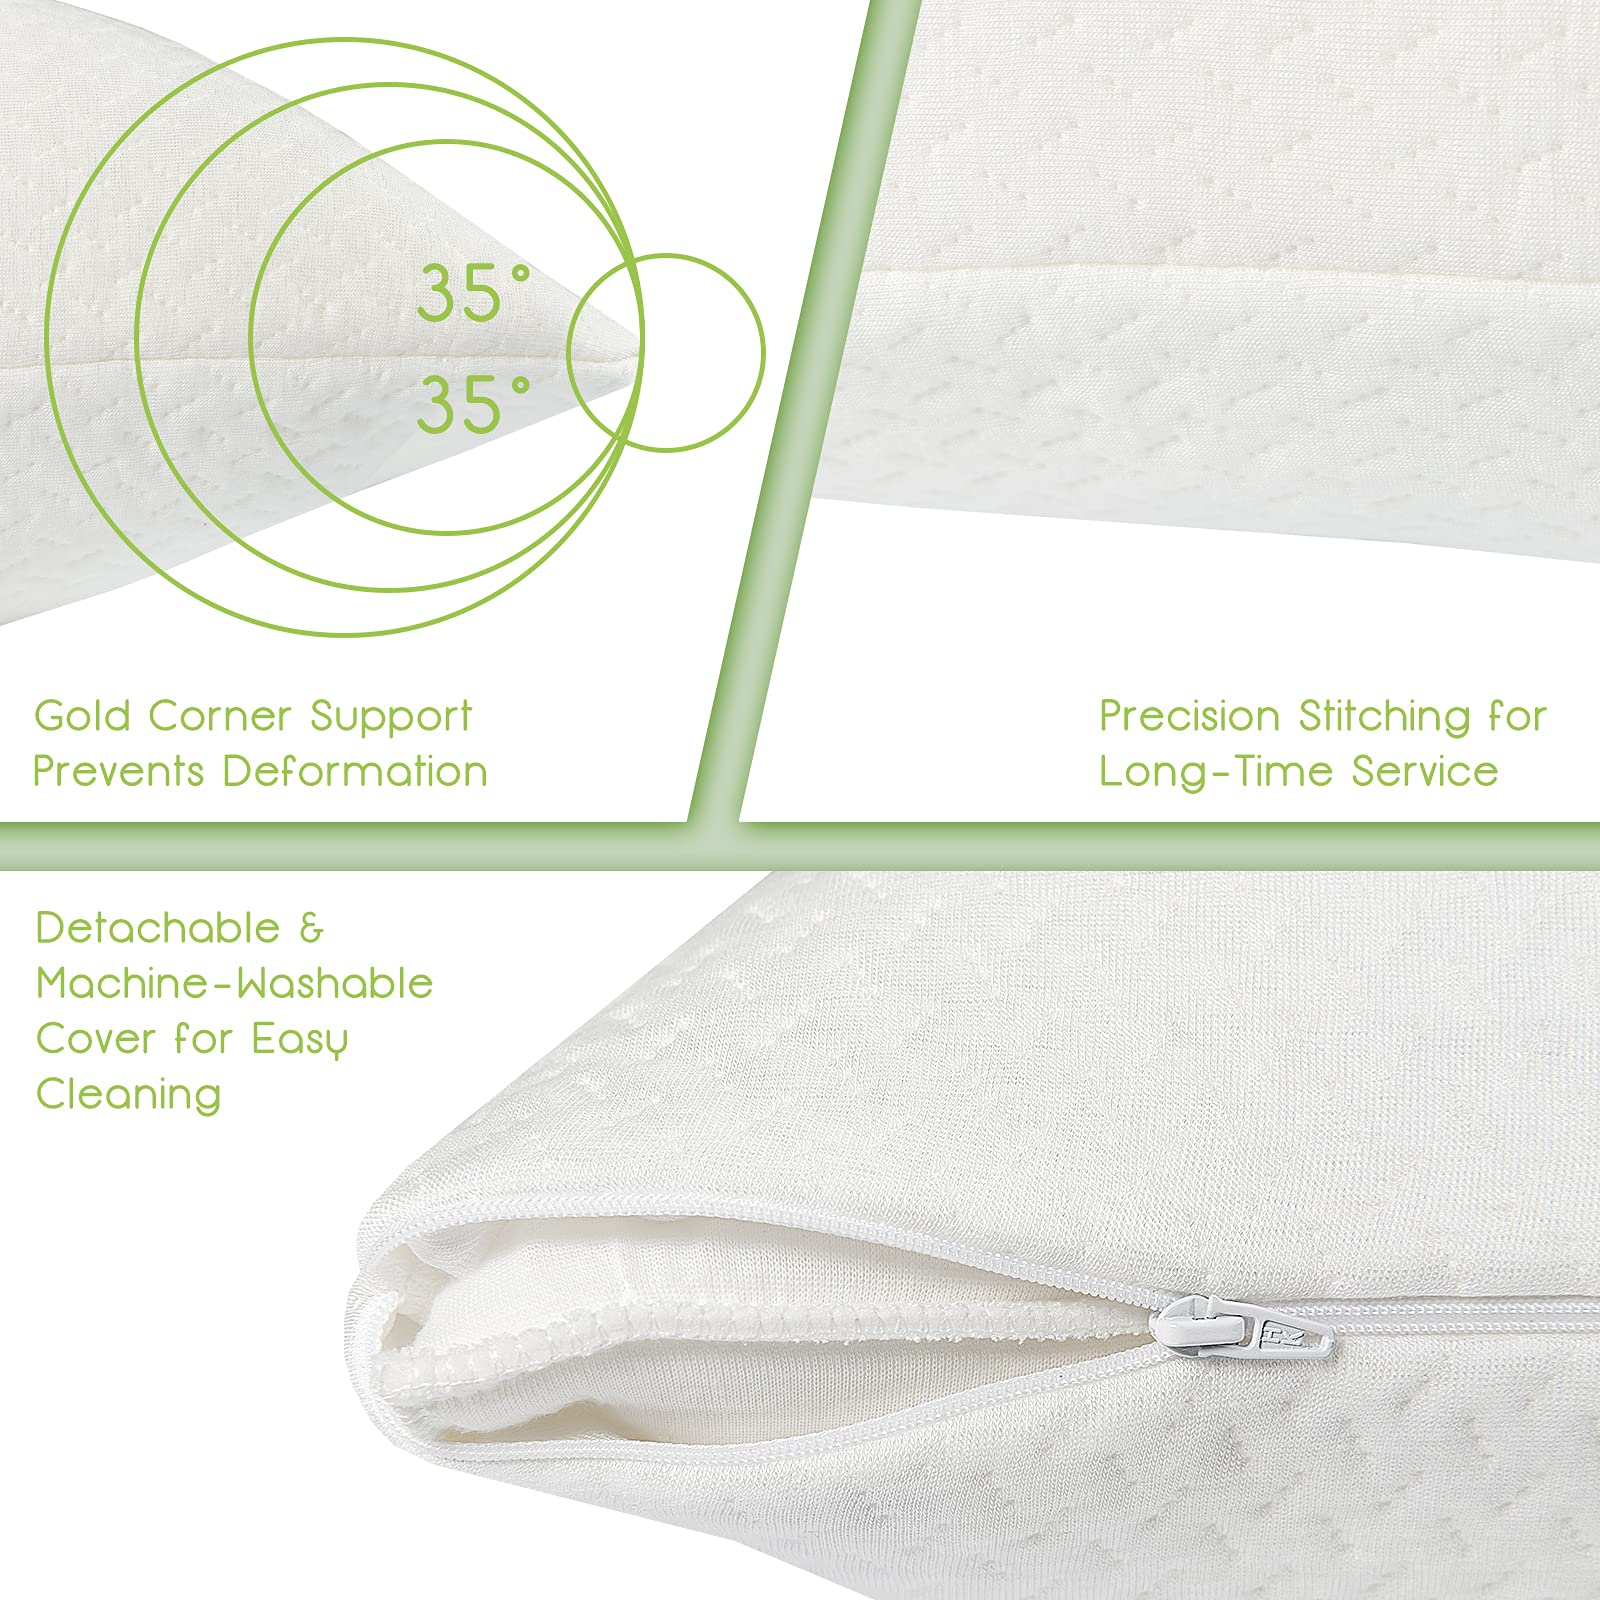 Giantex 2 Pack Shredded Memory Foam Pillows